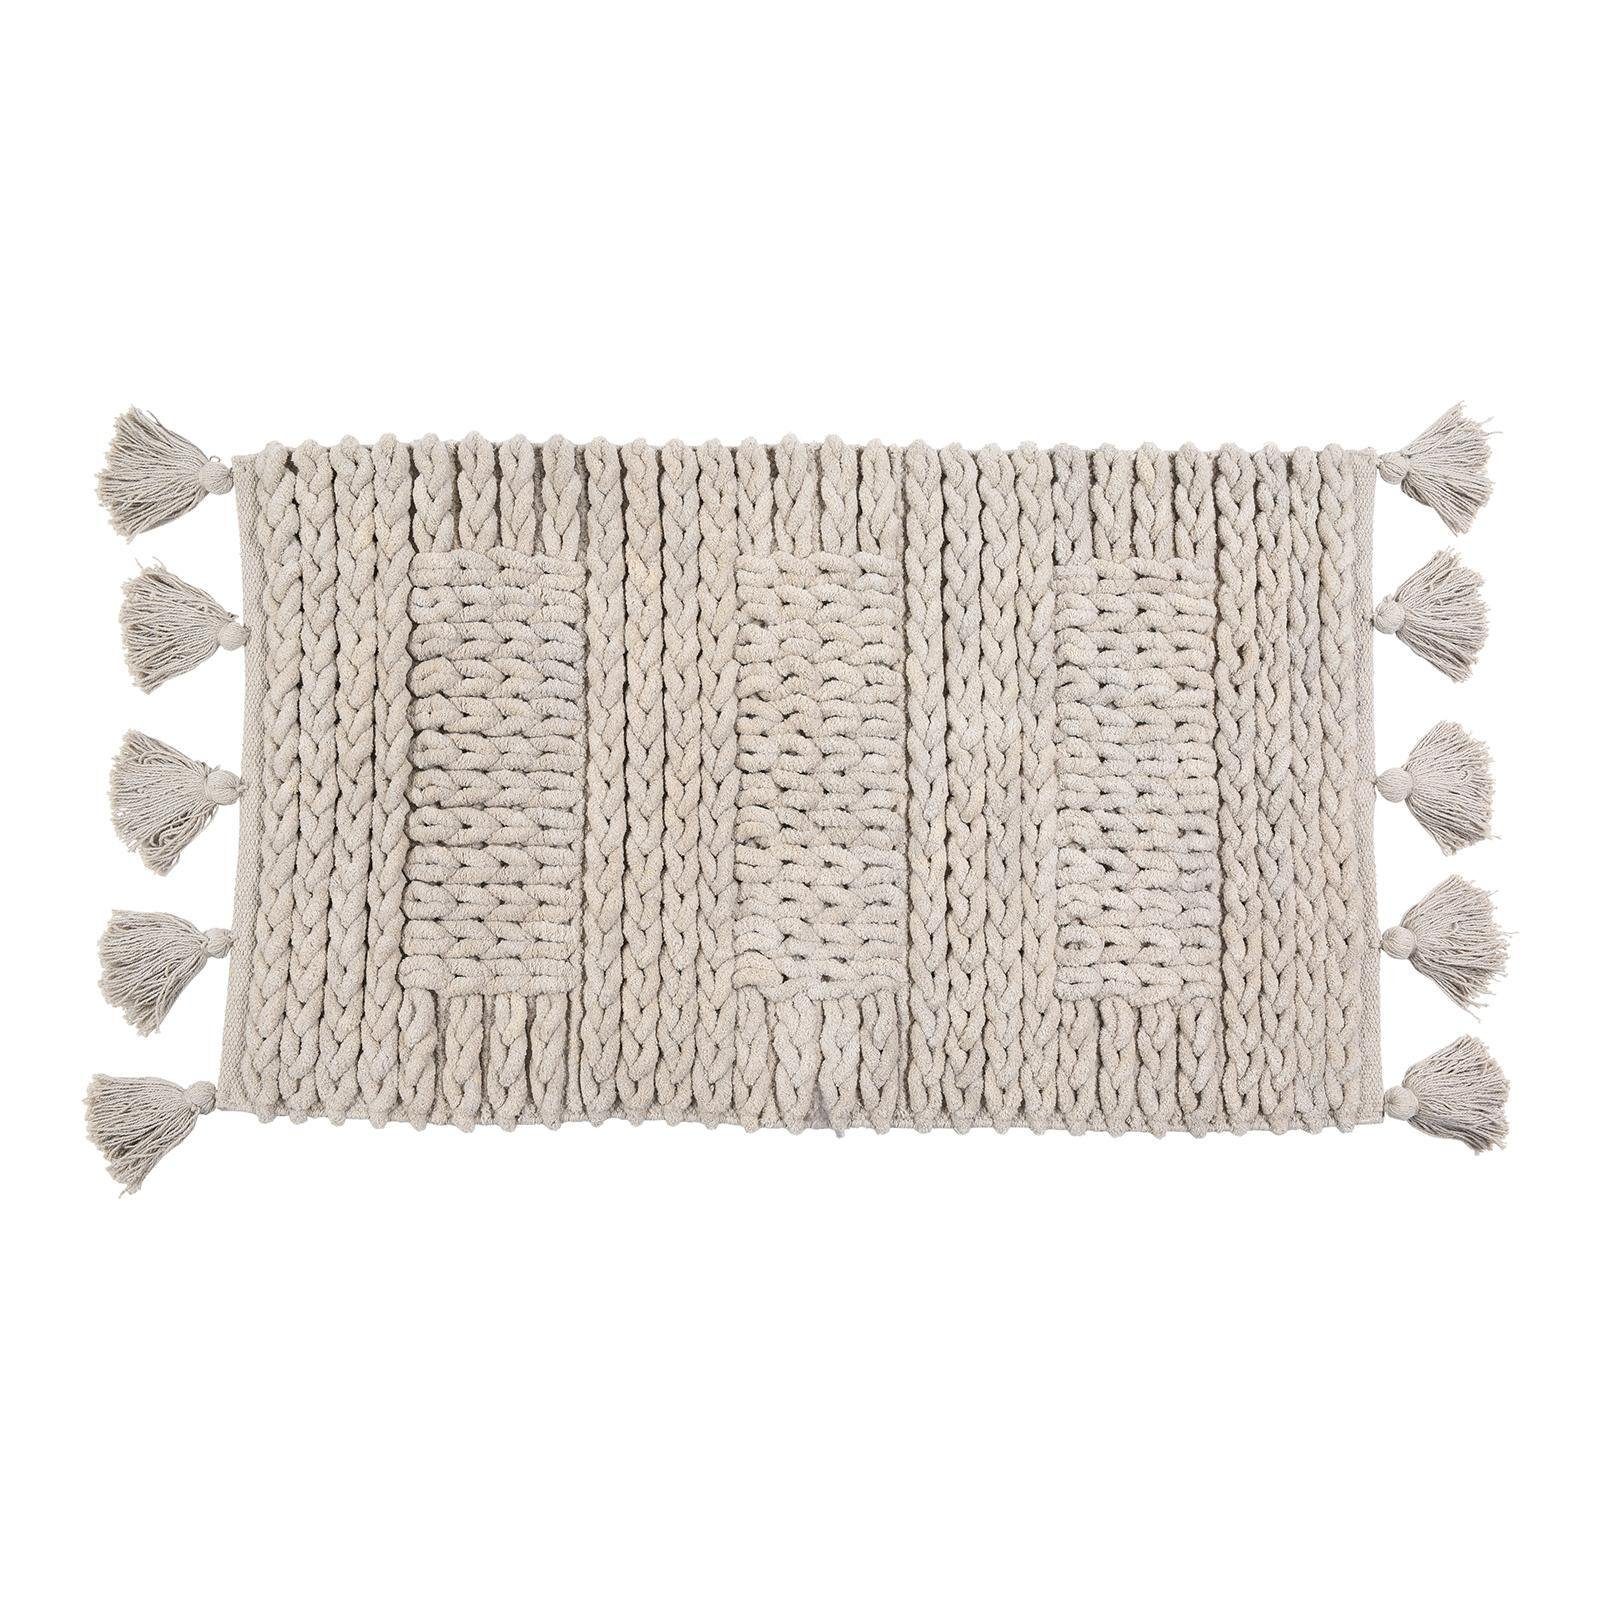 Badematte »Badematte Heavy Knit« Depot, aus Baumwolle, L 80 Zentimeter, B  50 Zentimeter online kaufen | OTTO